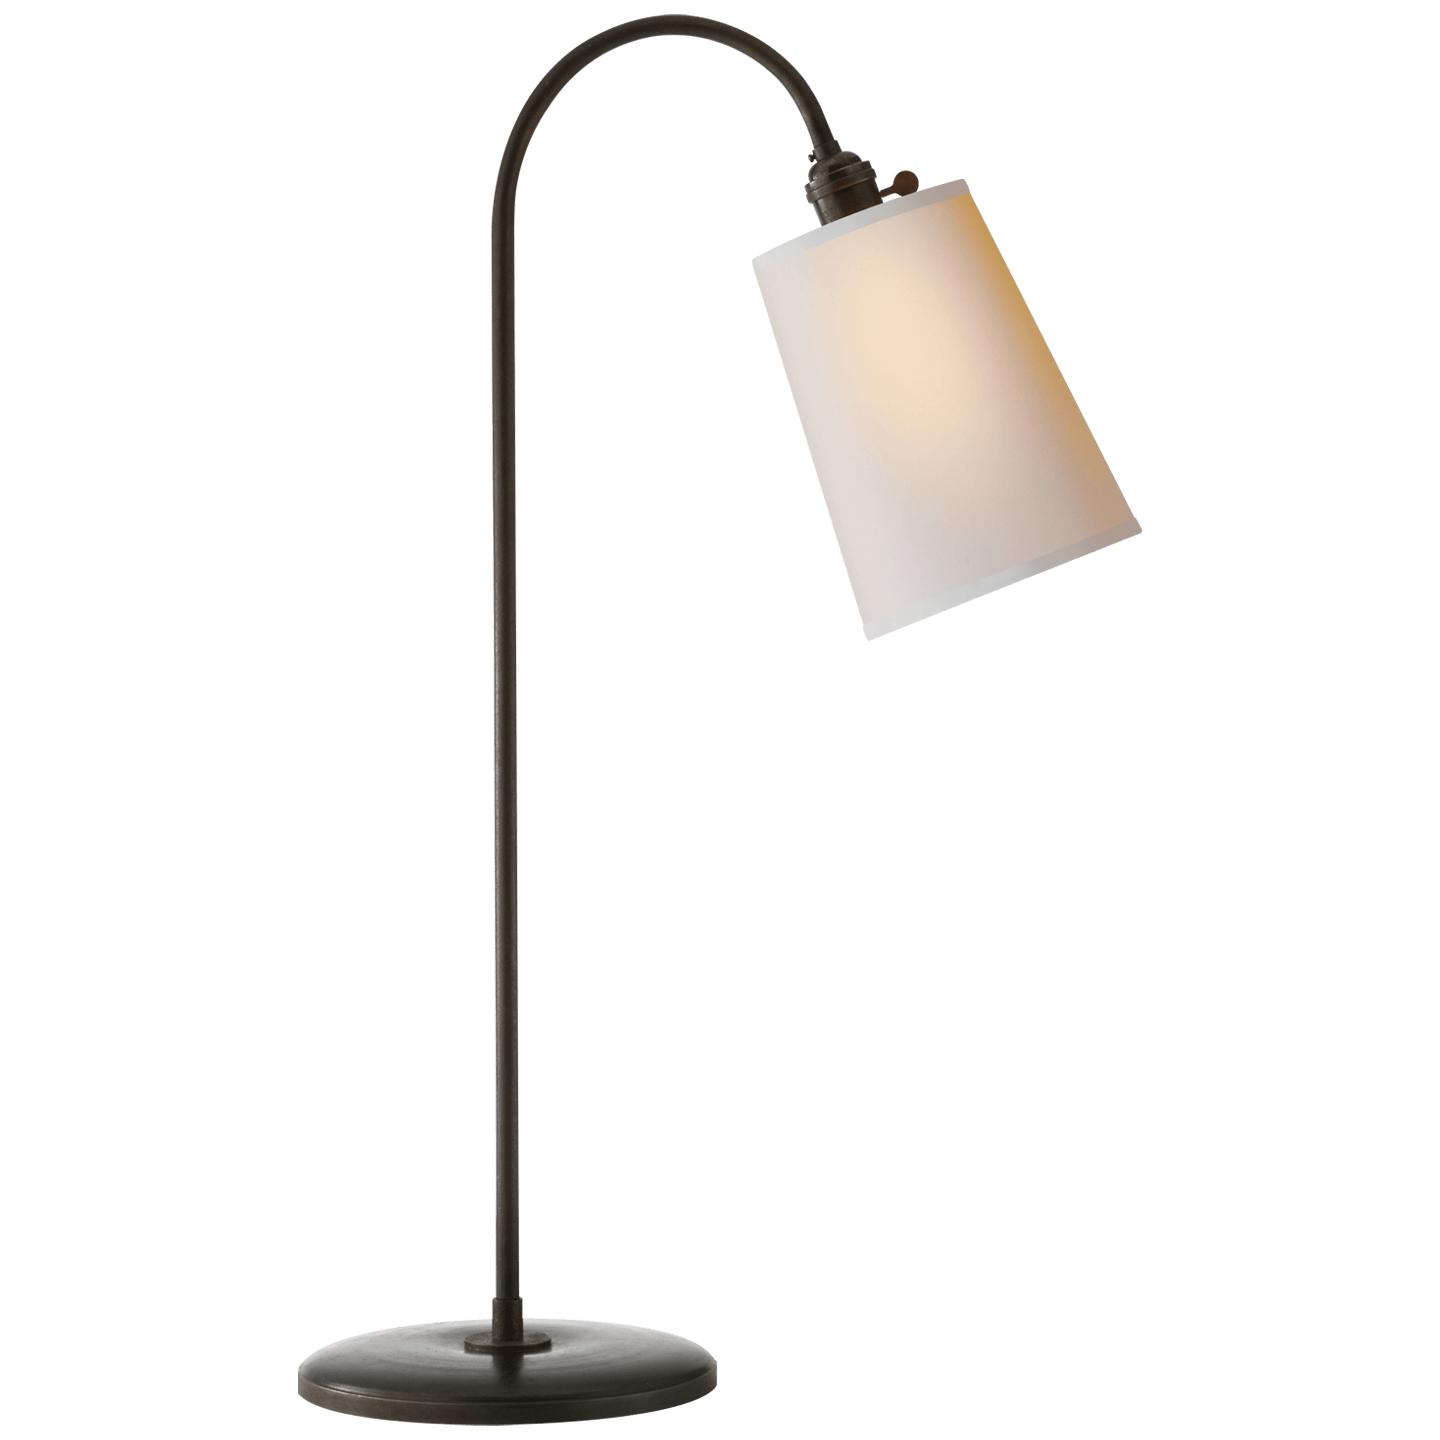 Купить Настольная лампа Mia Table Lamp в интернет-магазине roooms.ru